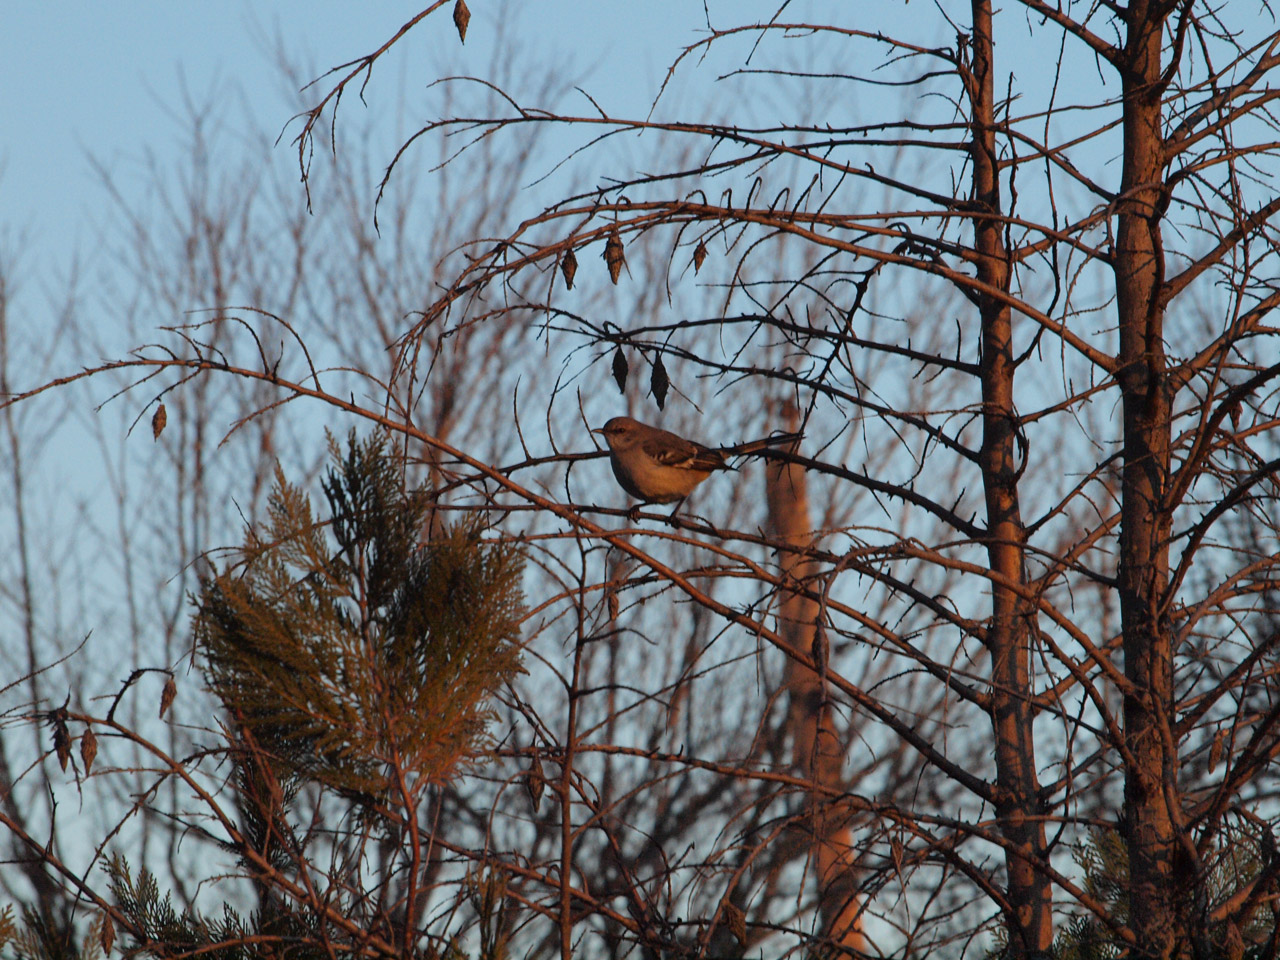 A Northern Mockingbird in a bush